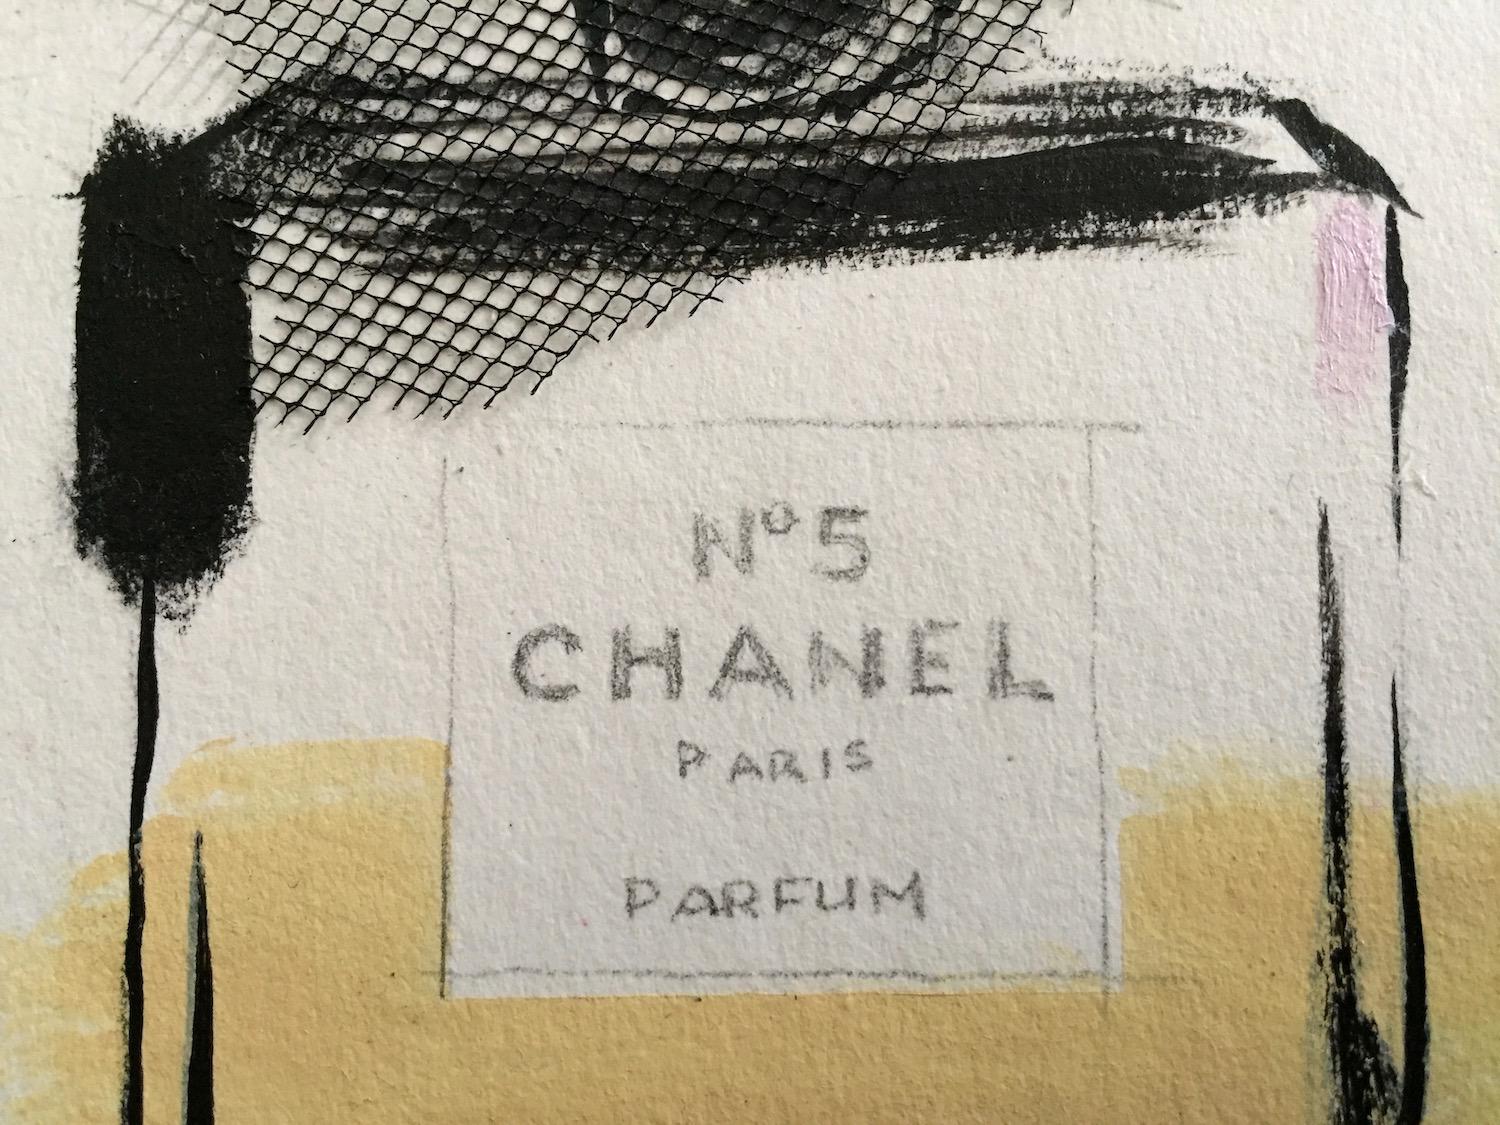 Hommage an das kultige Parfüm Chanel No. 5. Texturierte Collage-Elemente verleihen diesem Mixed-Media-Werk auf schwerem Kunstkarton visuelles Interesse. Zarte Details ergänzen die lockere Pinselführung zu einem ausdrucksstarken Ergebnis. (eines aus